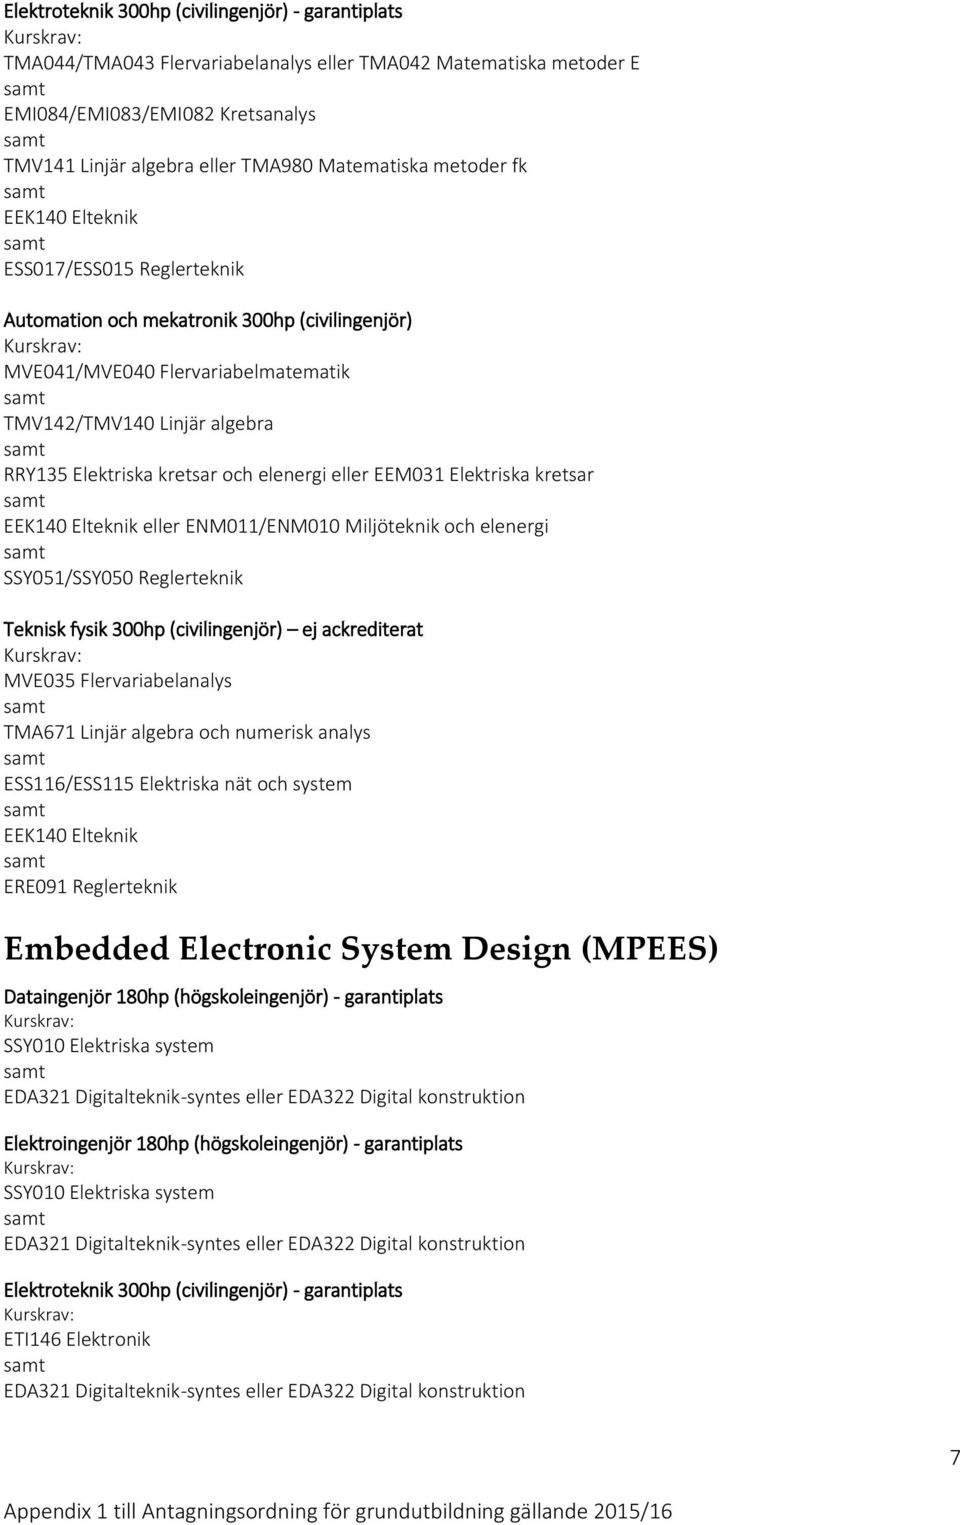 elenergi eller EEM031 Elektriska kretsar EEK140 Elteknik eller ENM011/ENM010 Miljöteknik och elenergi SSY051/SSY050 Reglerteknik Teknisk fysik 300hp (civilingenjör) ej ackrediterat MVE035